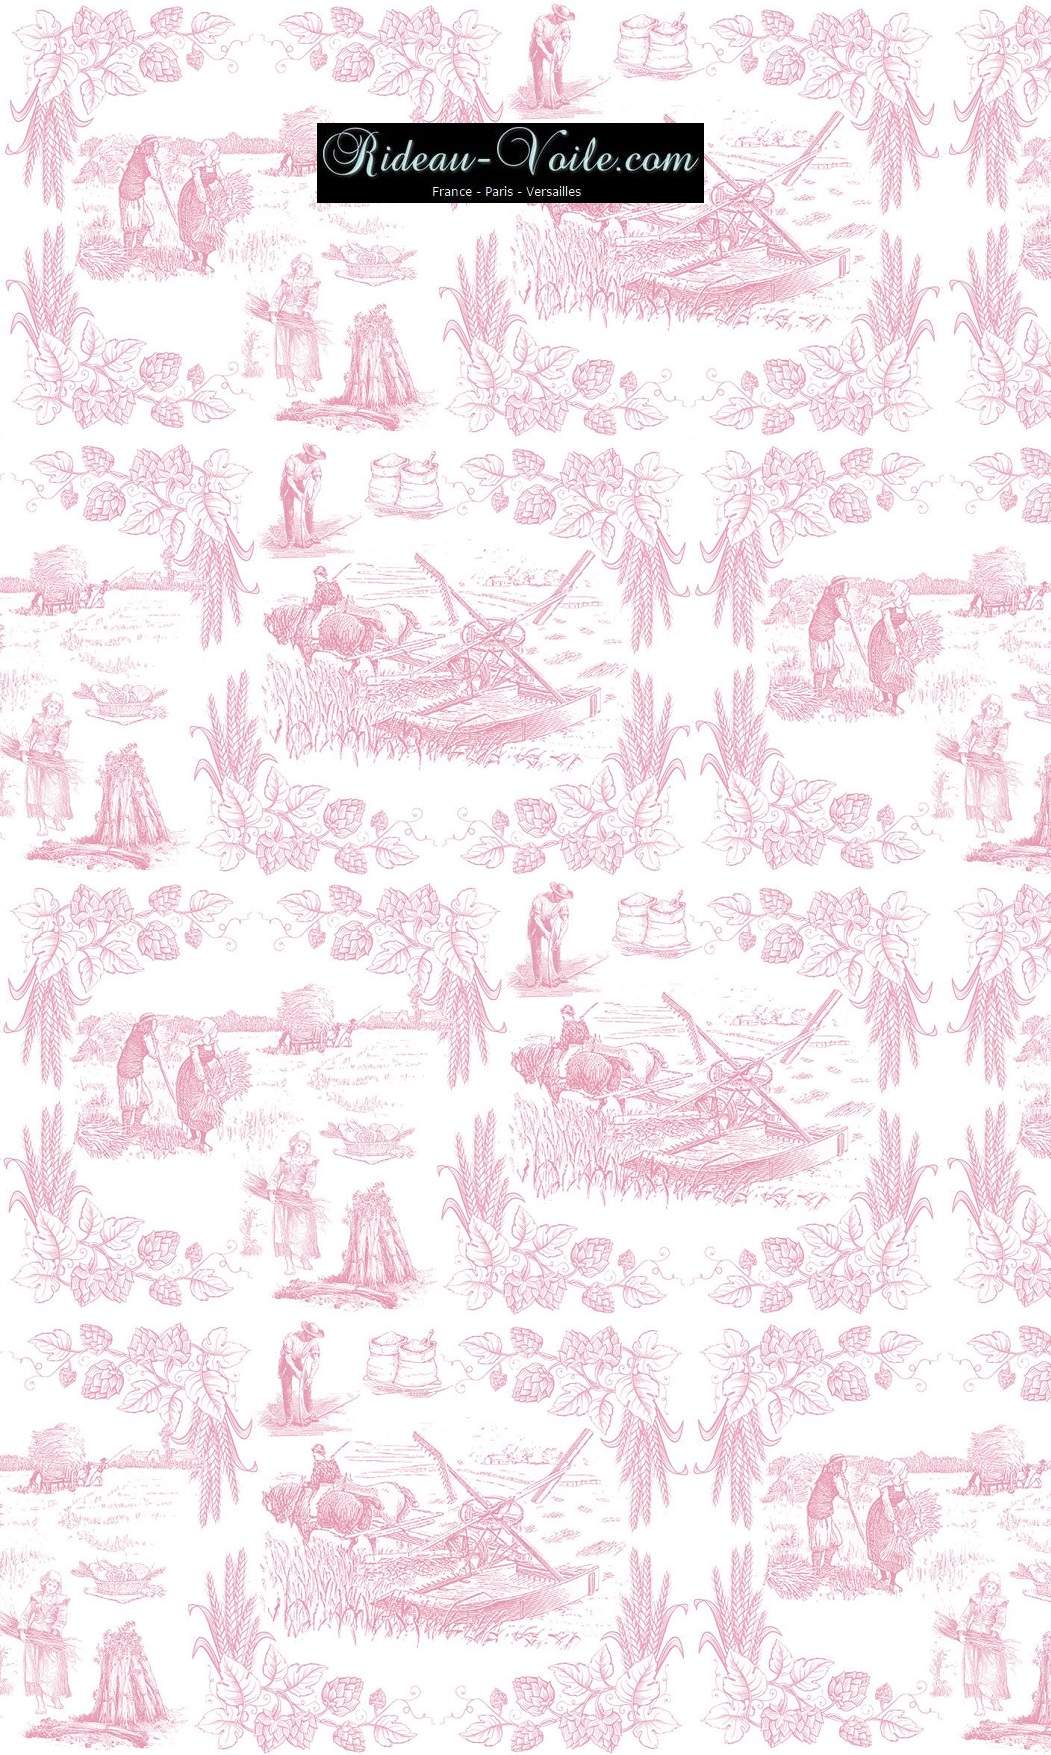 Toile de Jouy tissu au mètre ameublement textile Paris Versailles Yvelines decoration french pattern haut gamme rose tapisserie